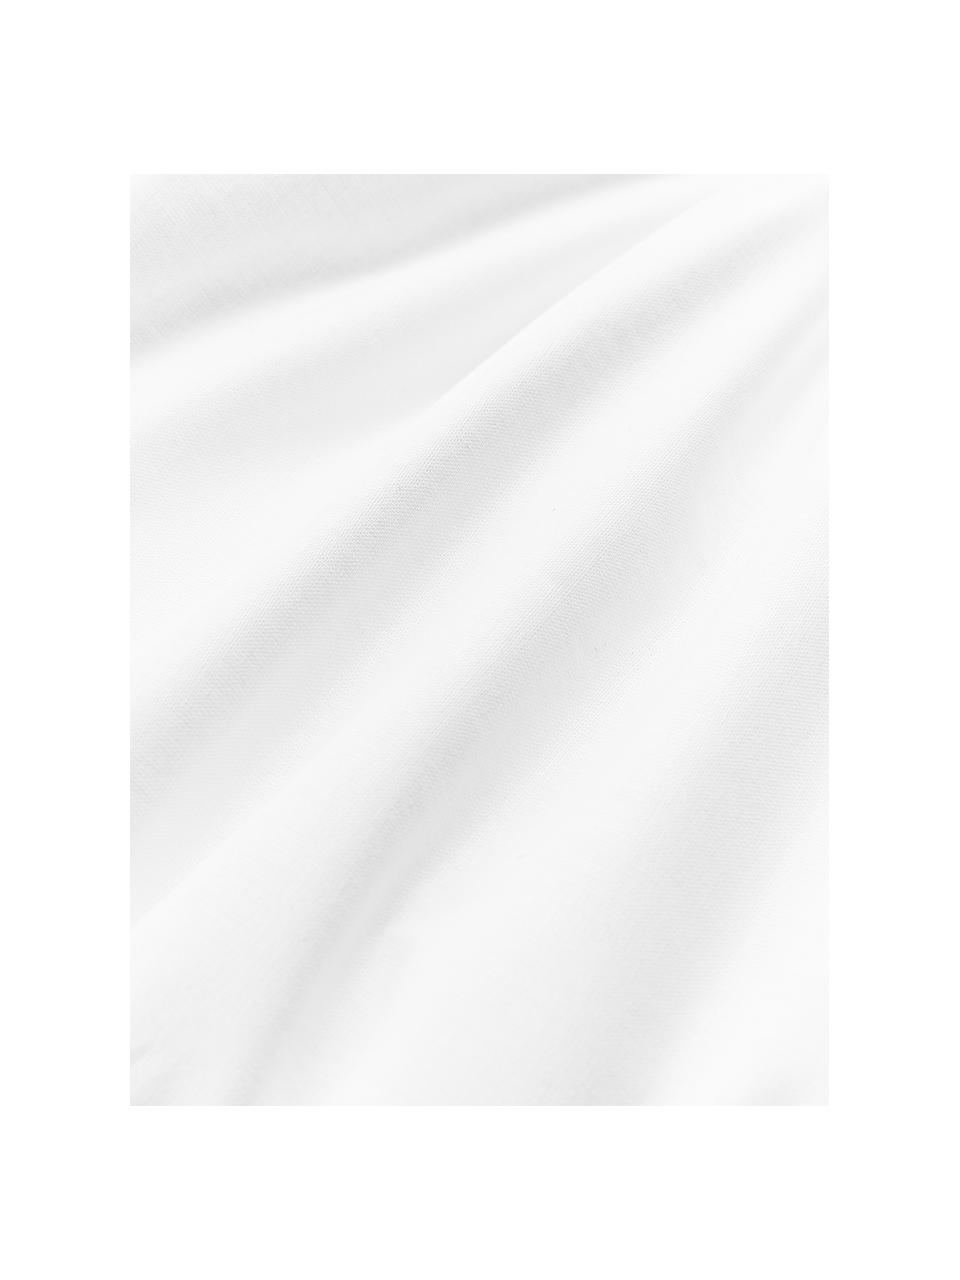 Wkład do poduszki z mikrofibry Sia, różne rozmiary, Biały, S 30 x D 50 cm